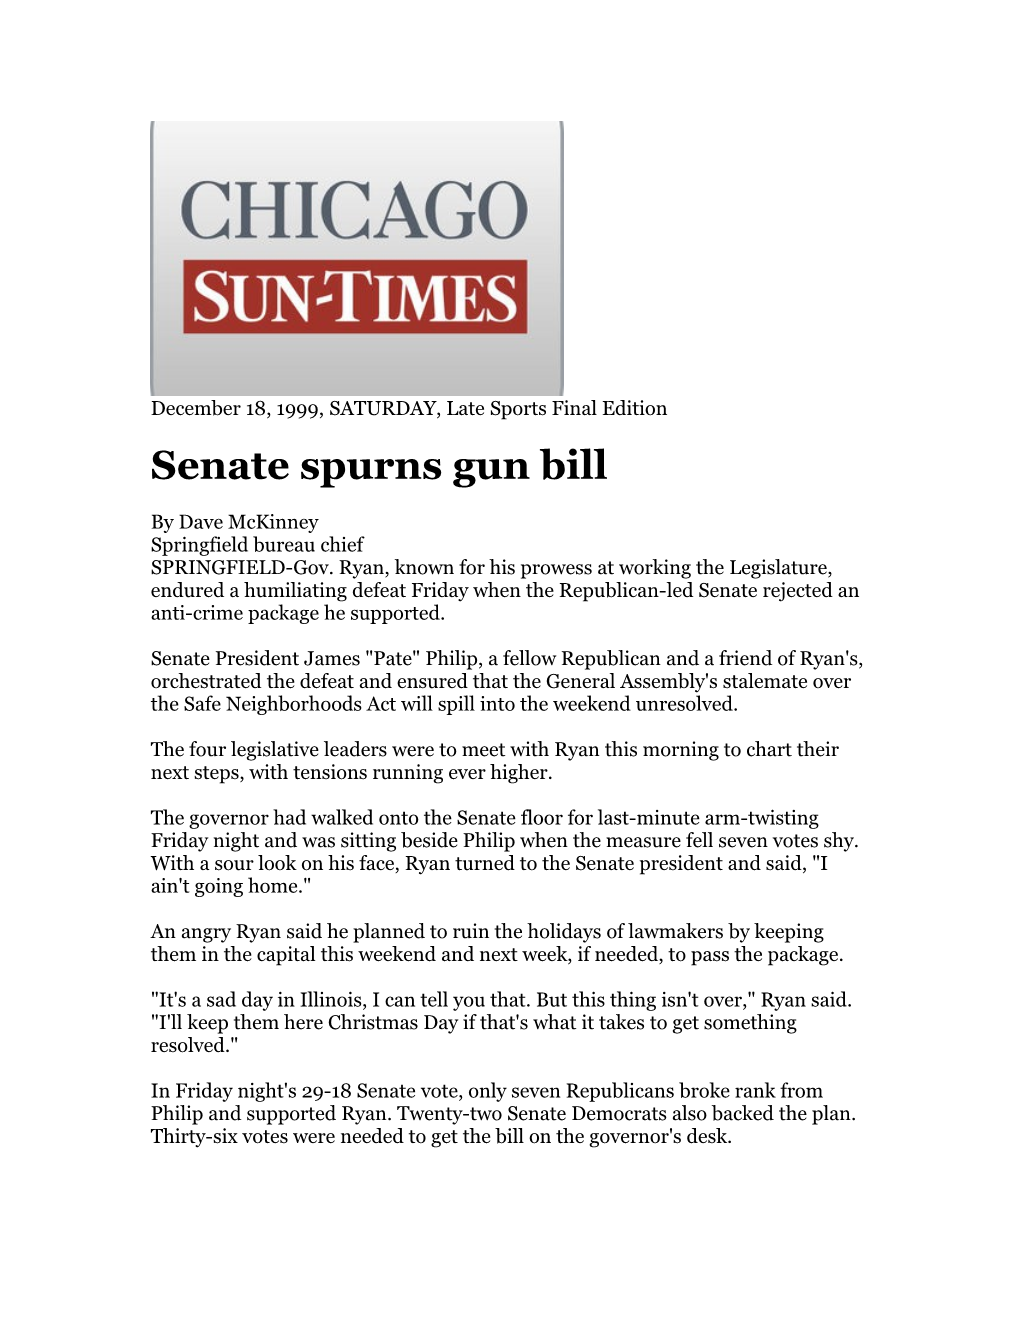 Senate Spurns Gun Bill